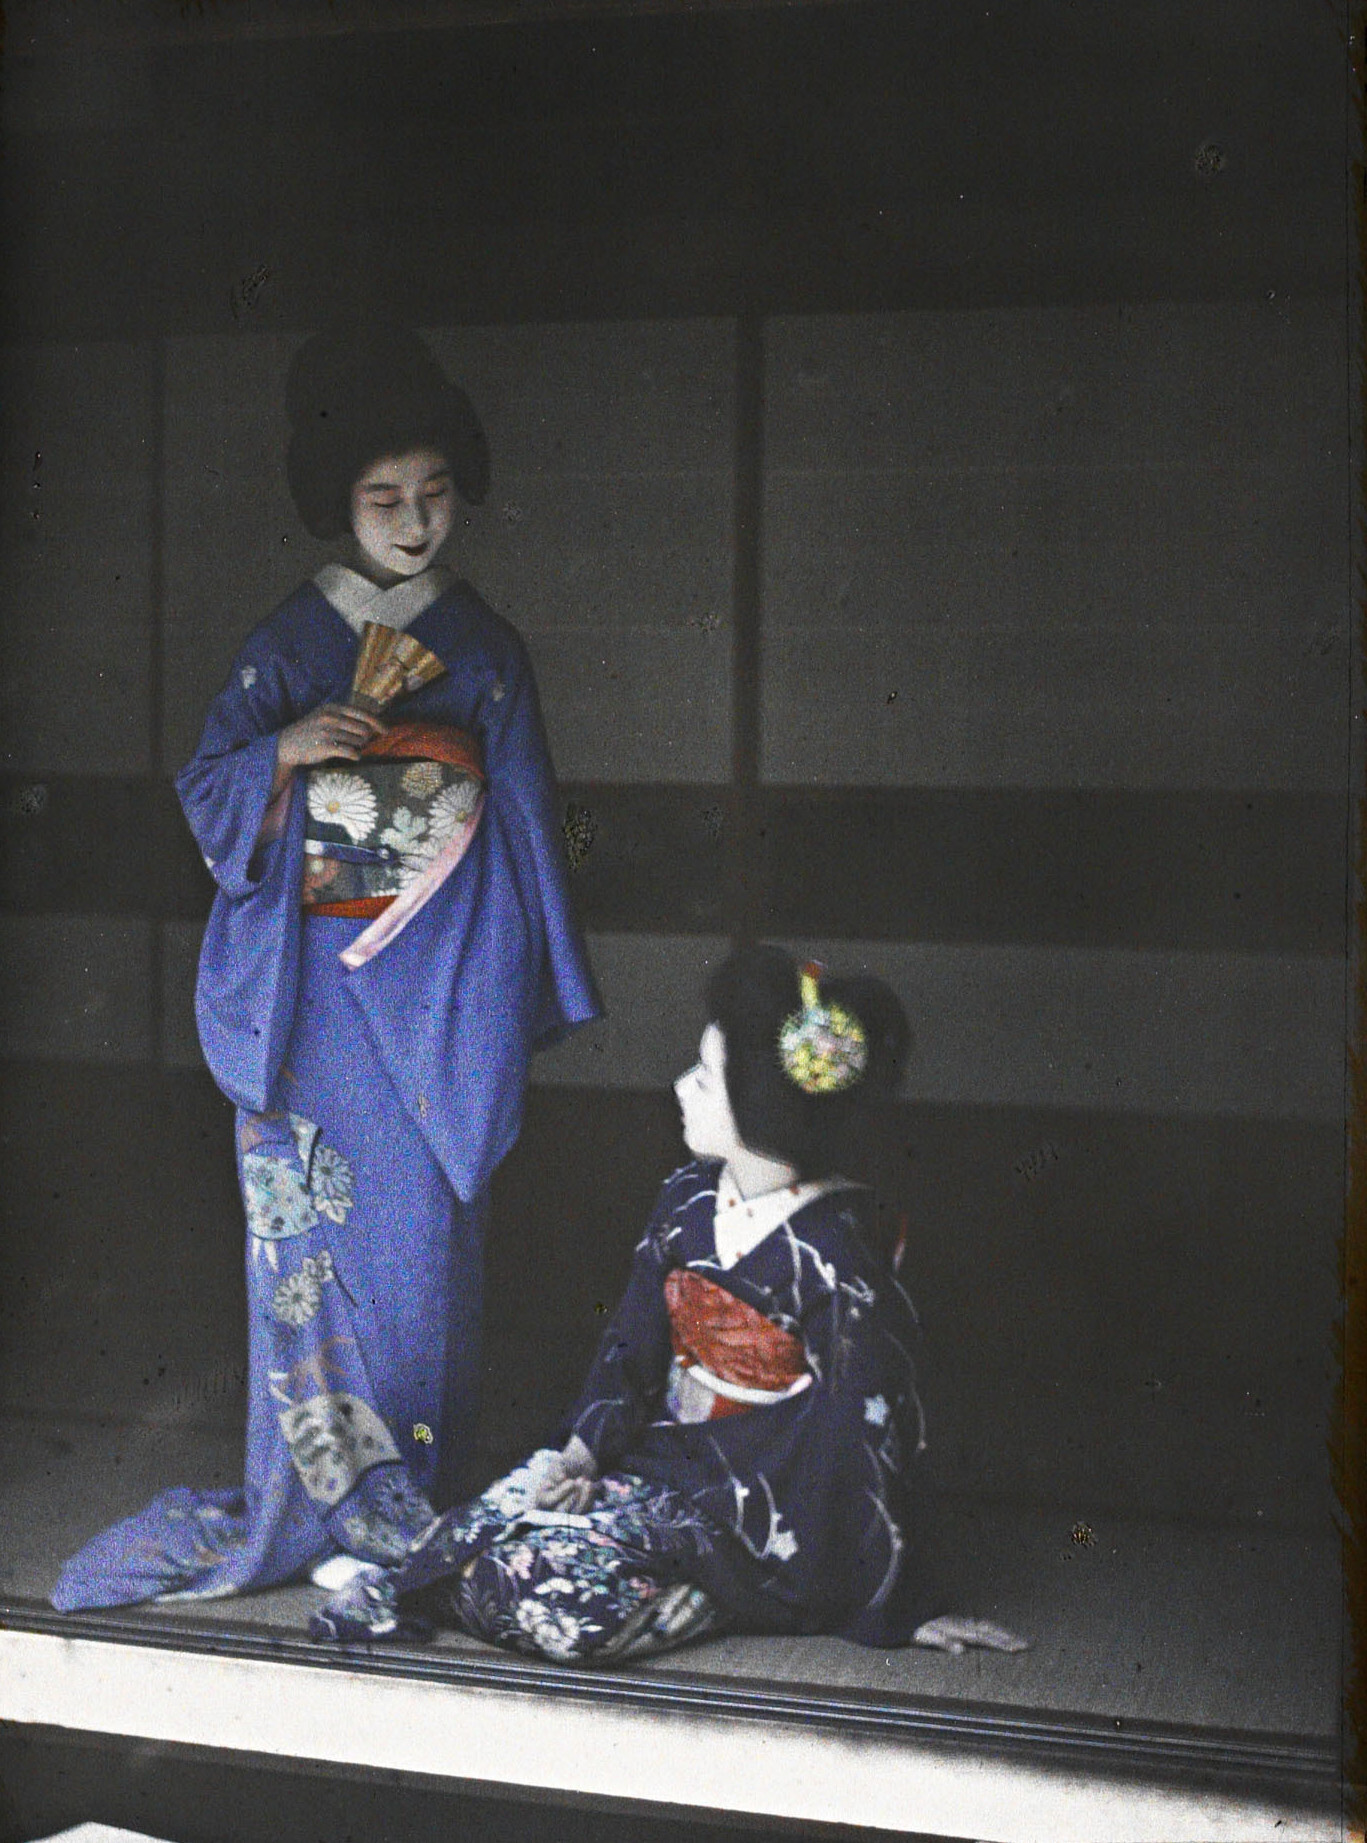 Японская гейша и майко (ученица гейши), 1926 год, автор Роджер Дюма (автохром)